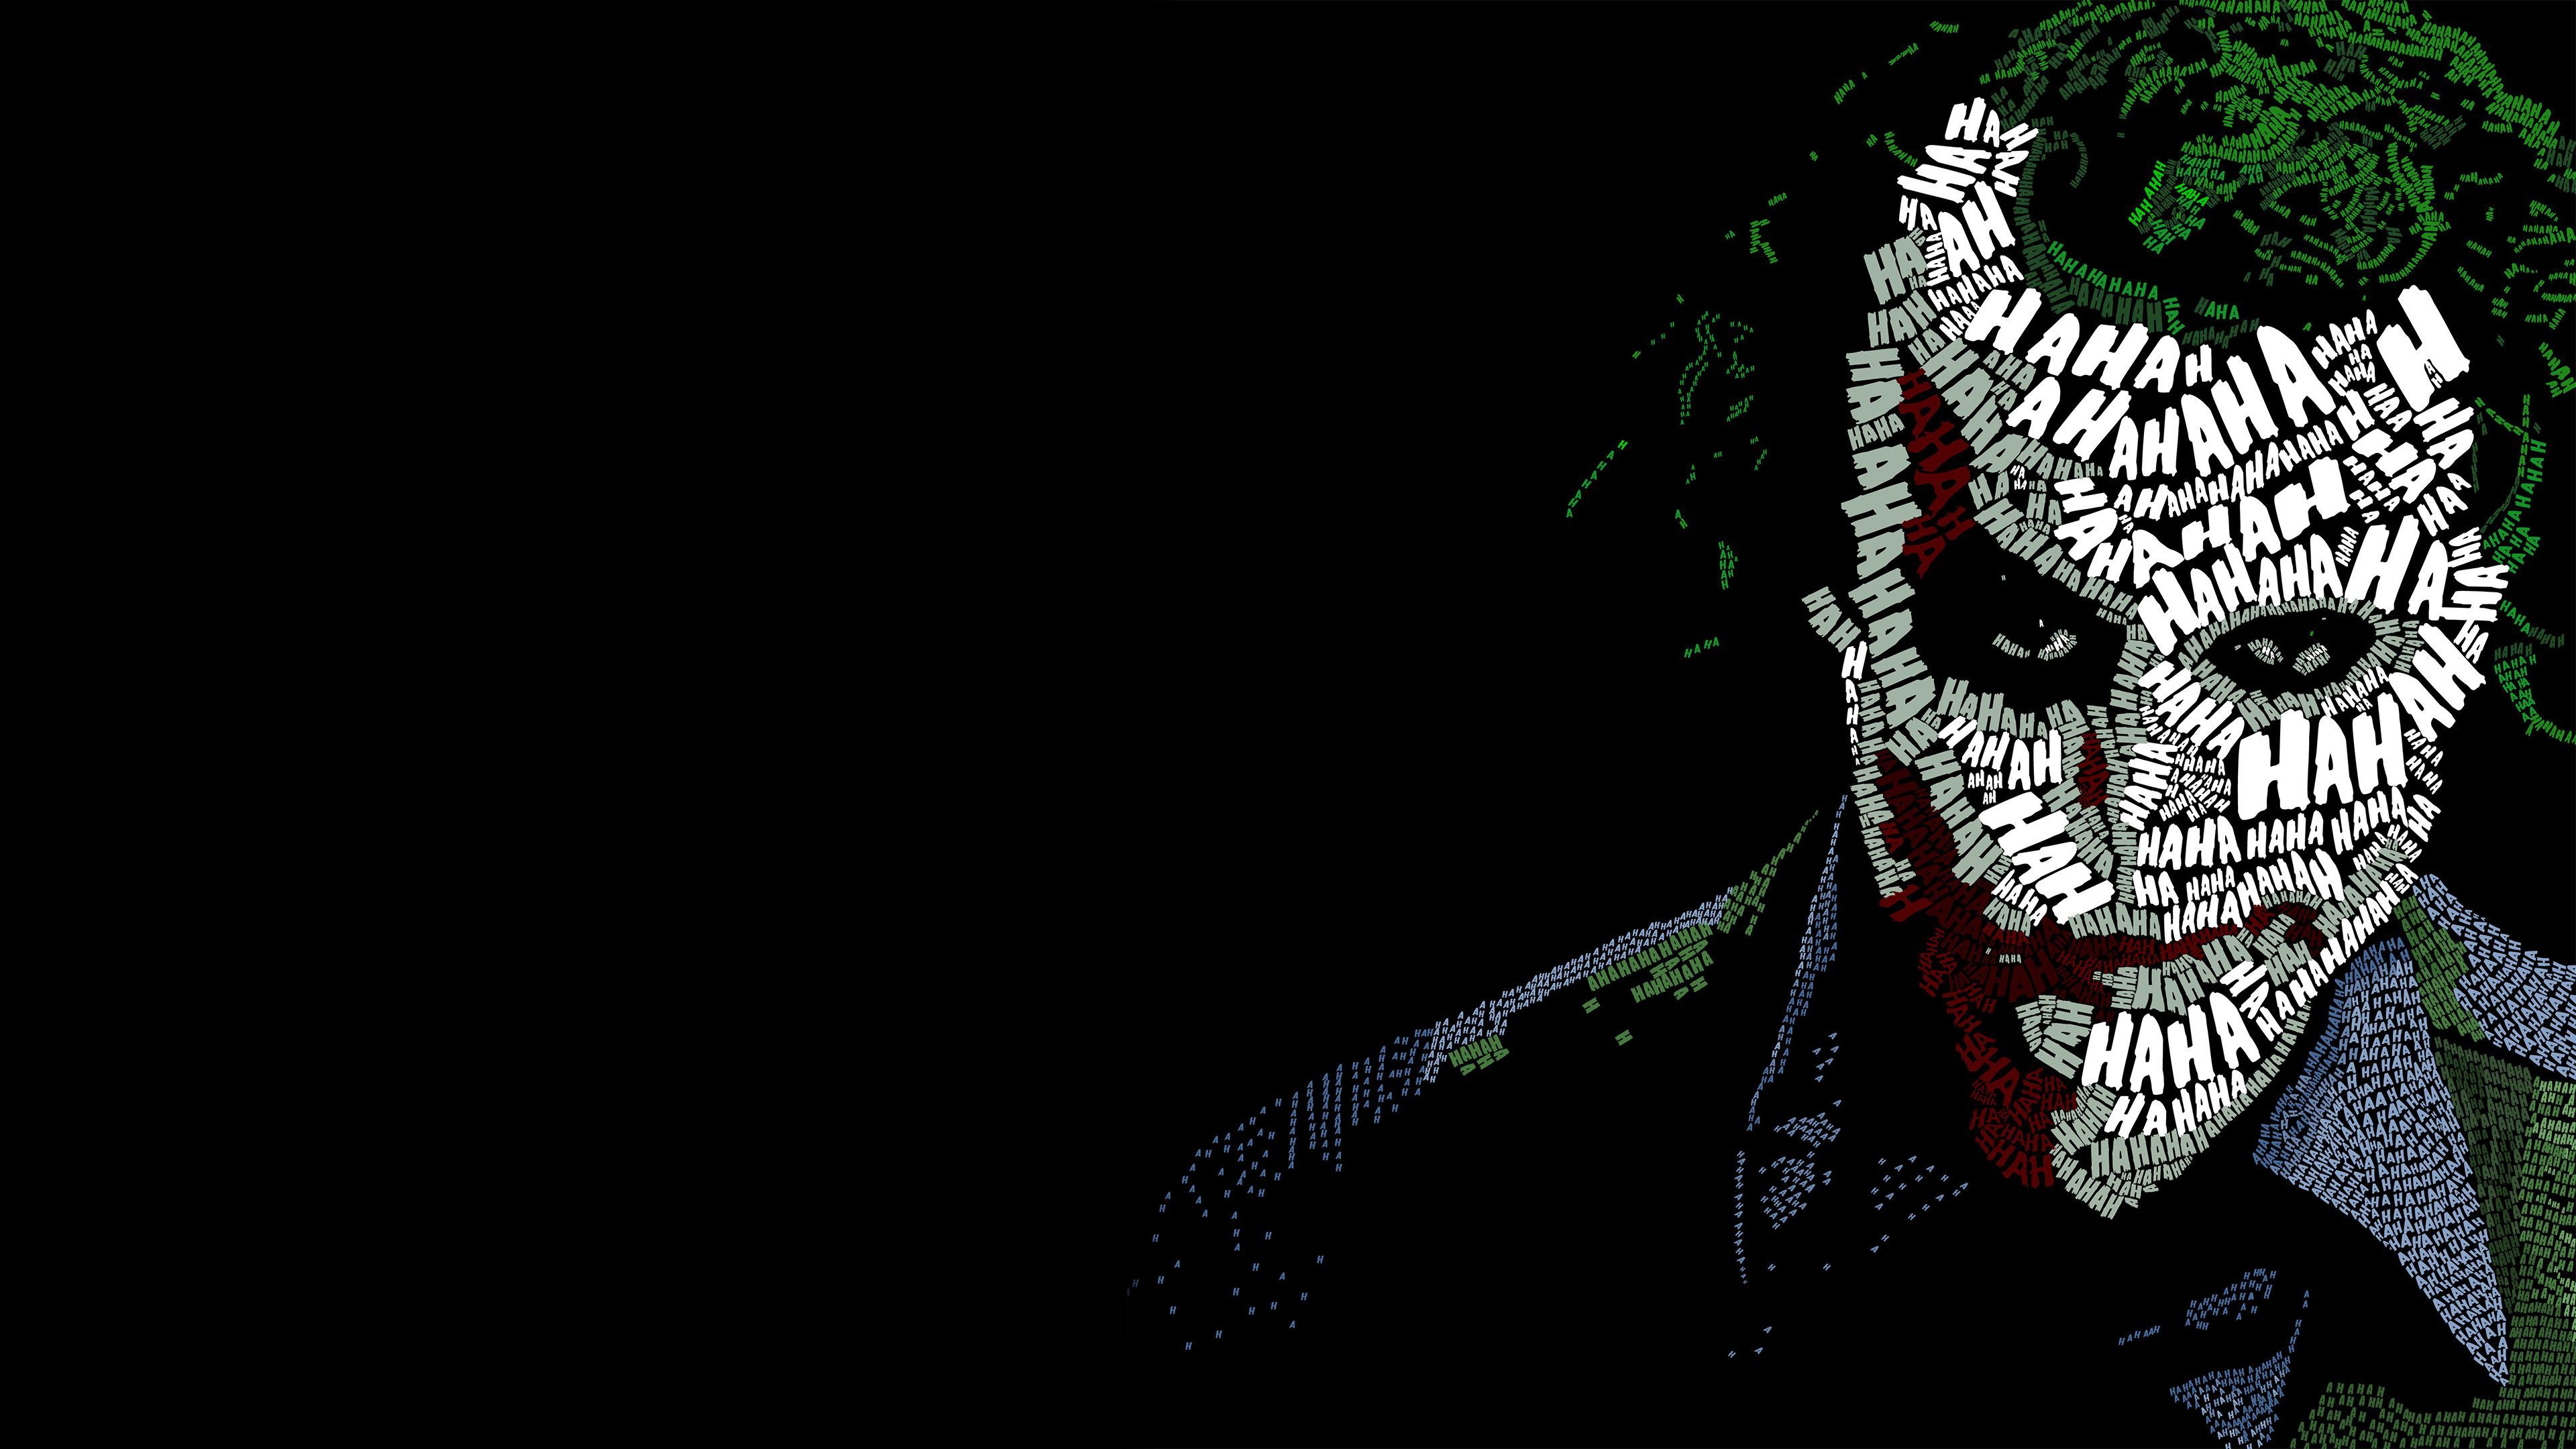 Joker 4K PC Wallpaper Free Joker 4K PC Background